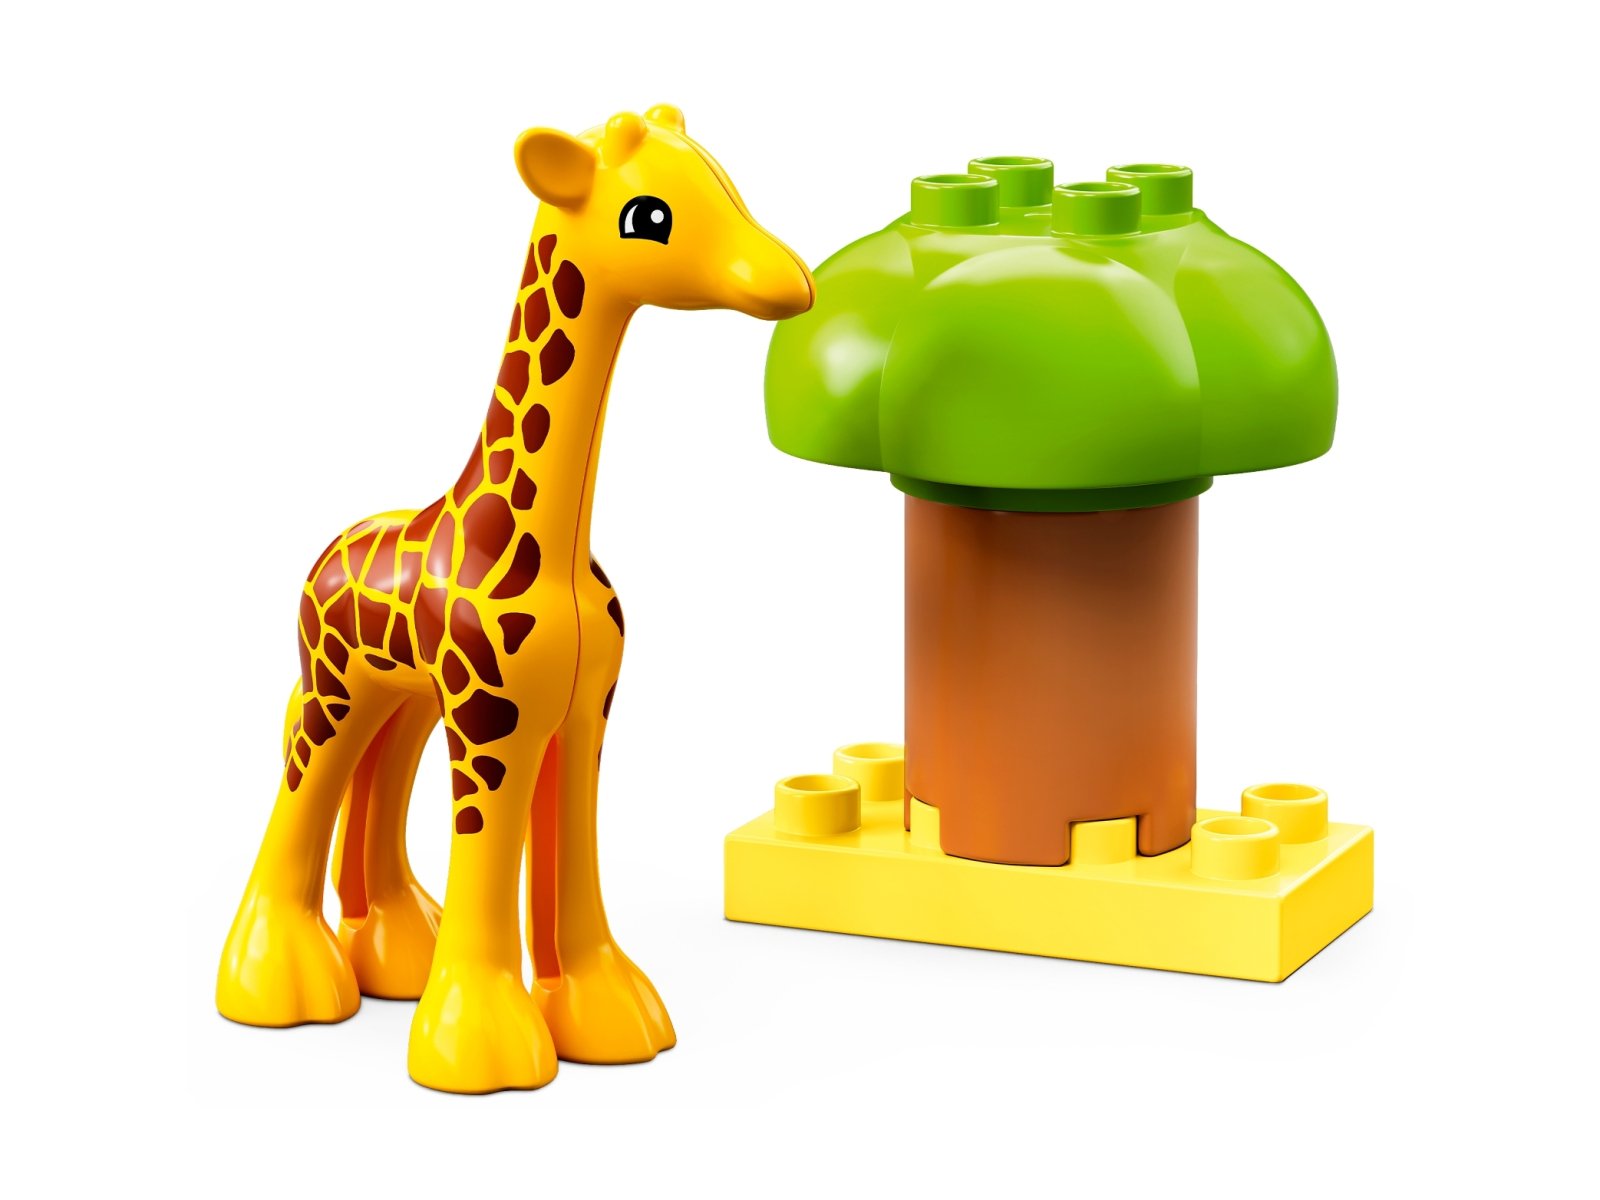 LEGO Duplo 10971 Dzikie zwierzęta Afryki